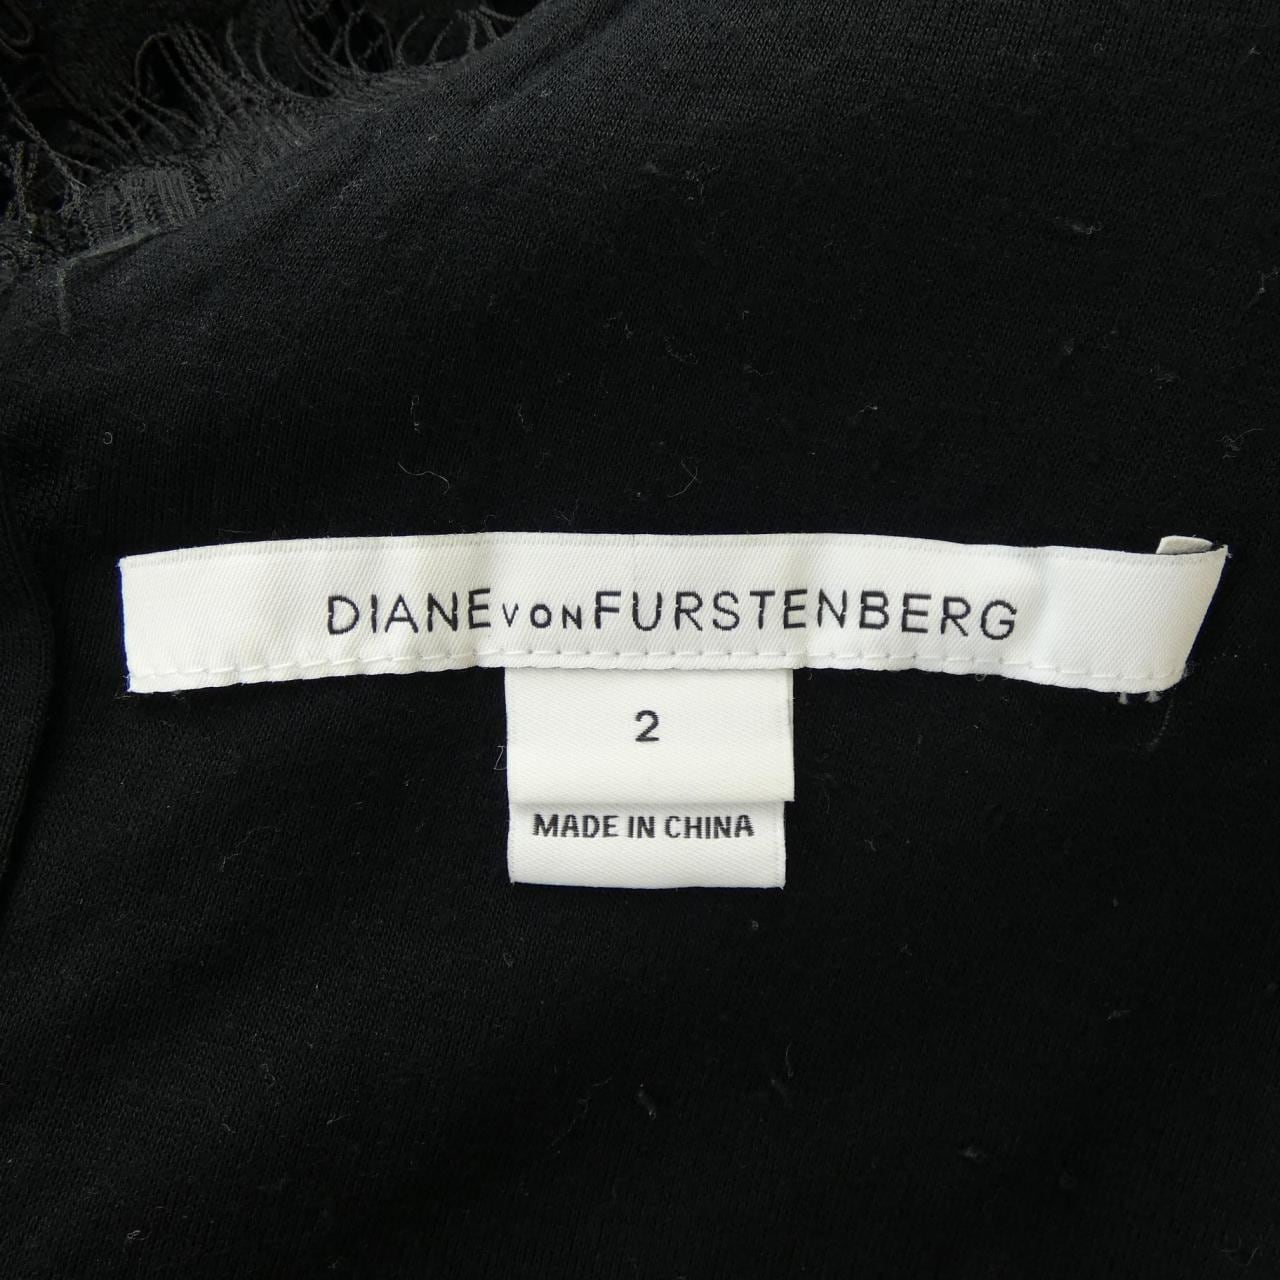 Diane von Furstenberg DIANE vonFURSTENBERG Dress